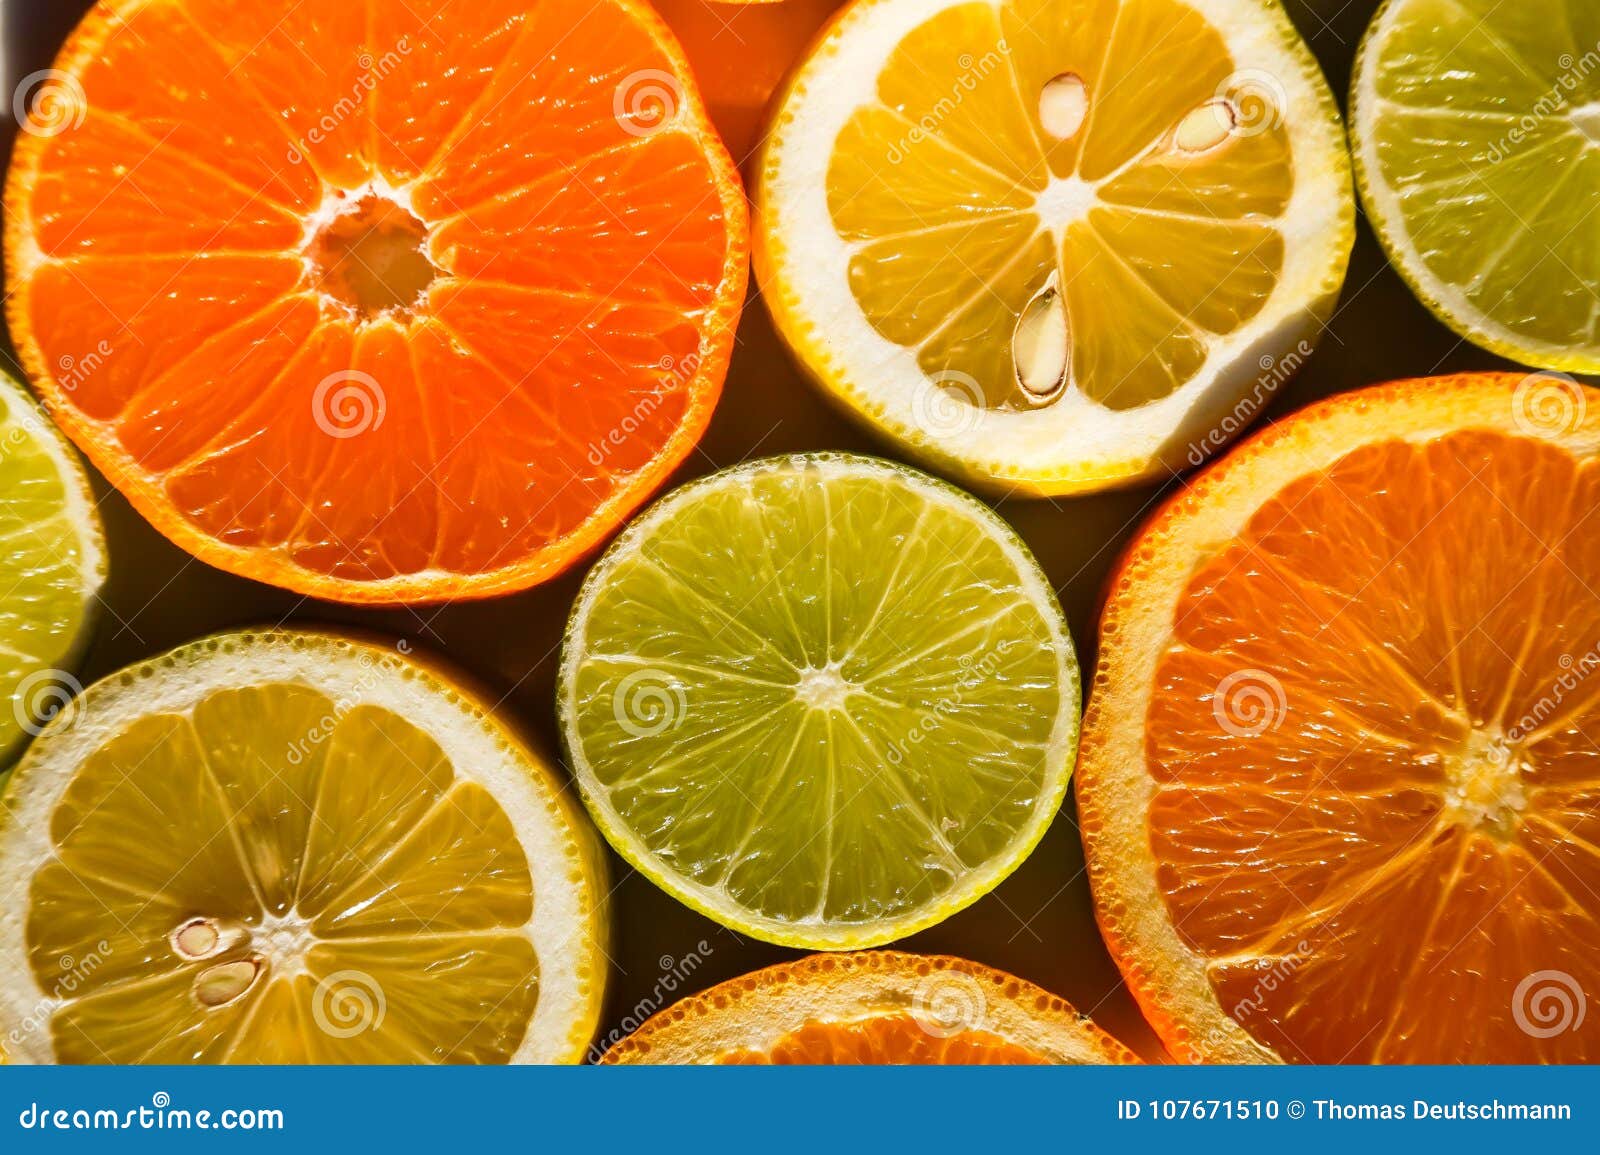 День апельсина и лимона картинки